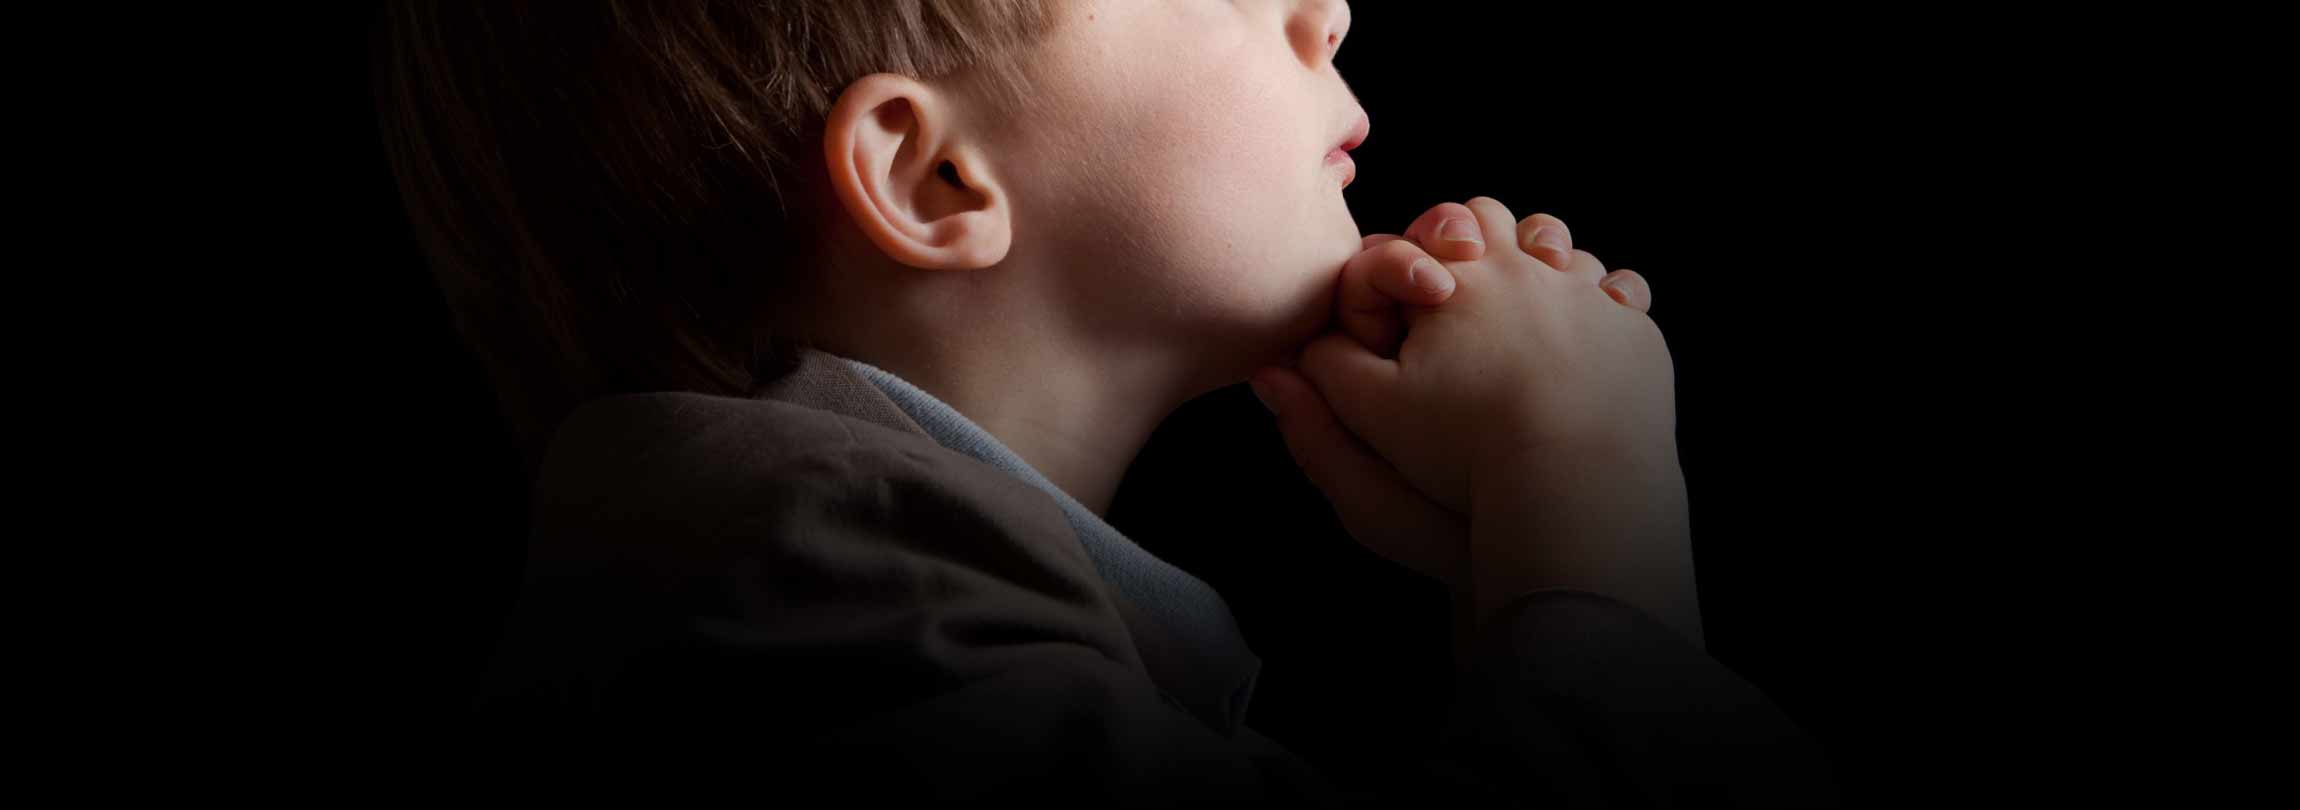 Carta de um pai a seu filho: como rezar e ser um cristão melhor?